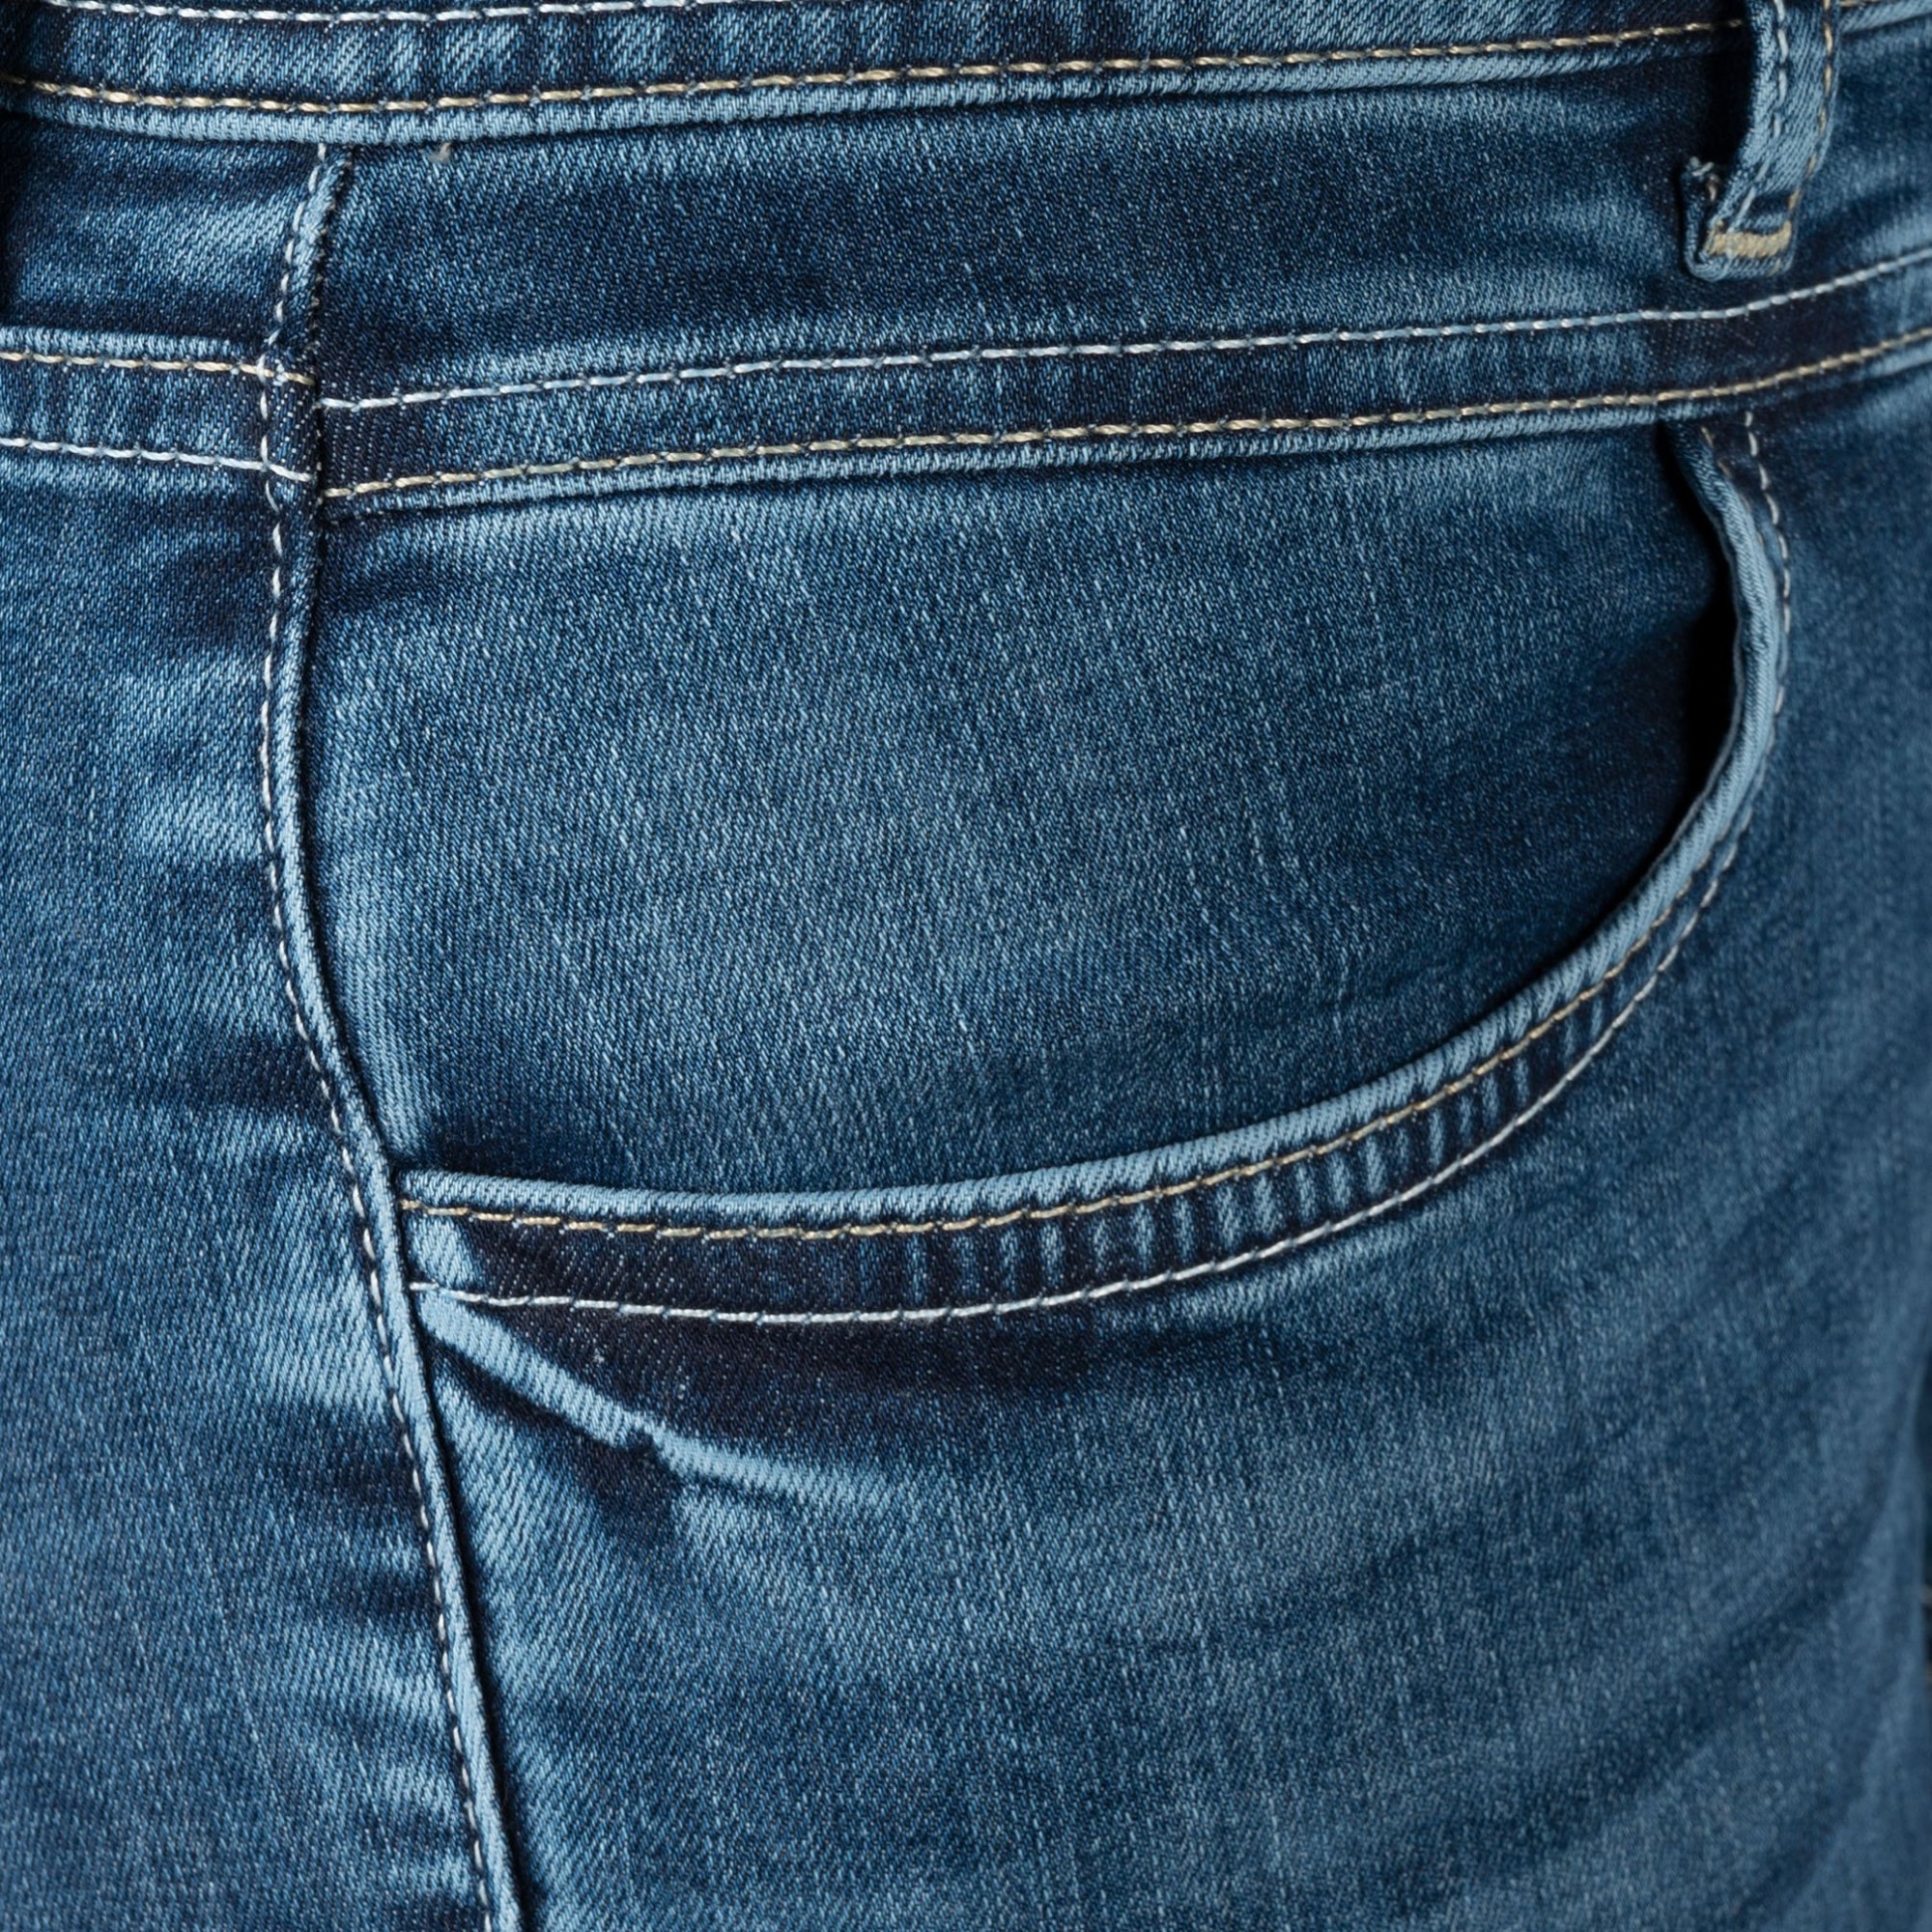 Jeans - online Fischer York meinfischer.de - im bei Slim kaufen Mein - Fit Shop